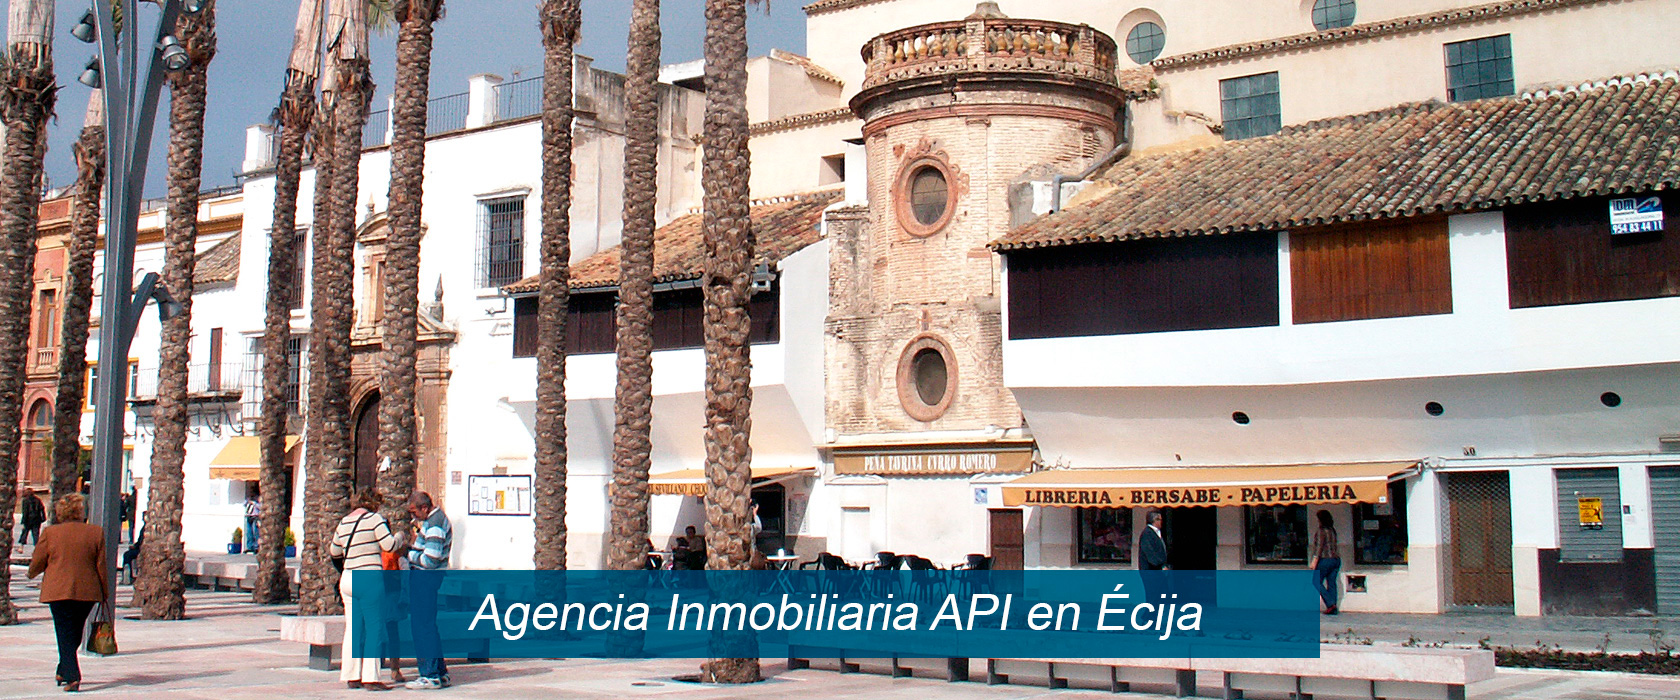 Apiml Inmobiliaria en Ecija ,casas y pisos en venta, solares, Sevilla, Écija.